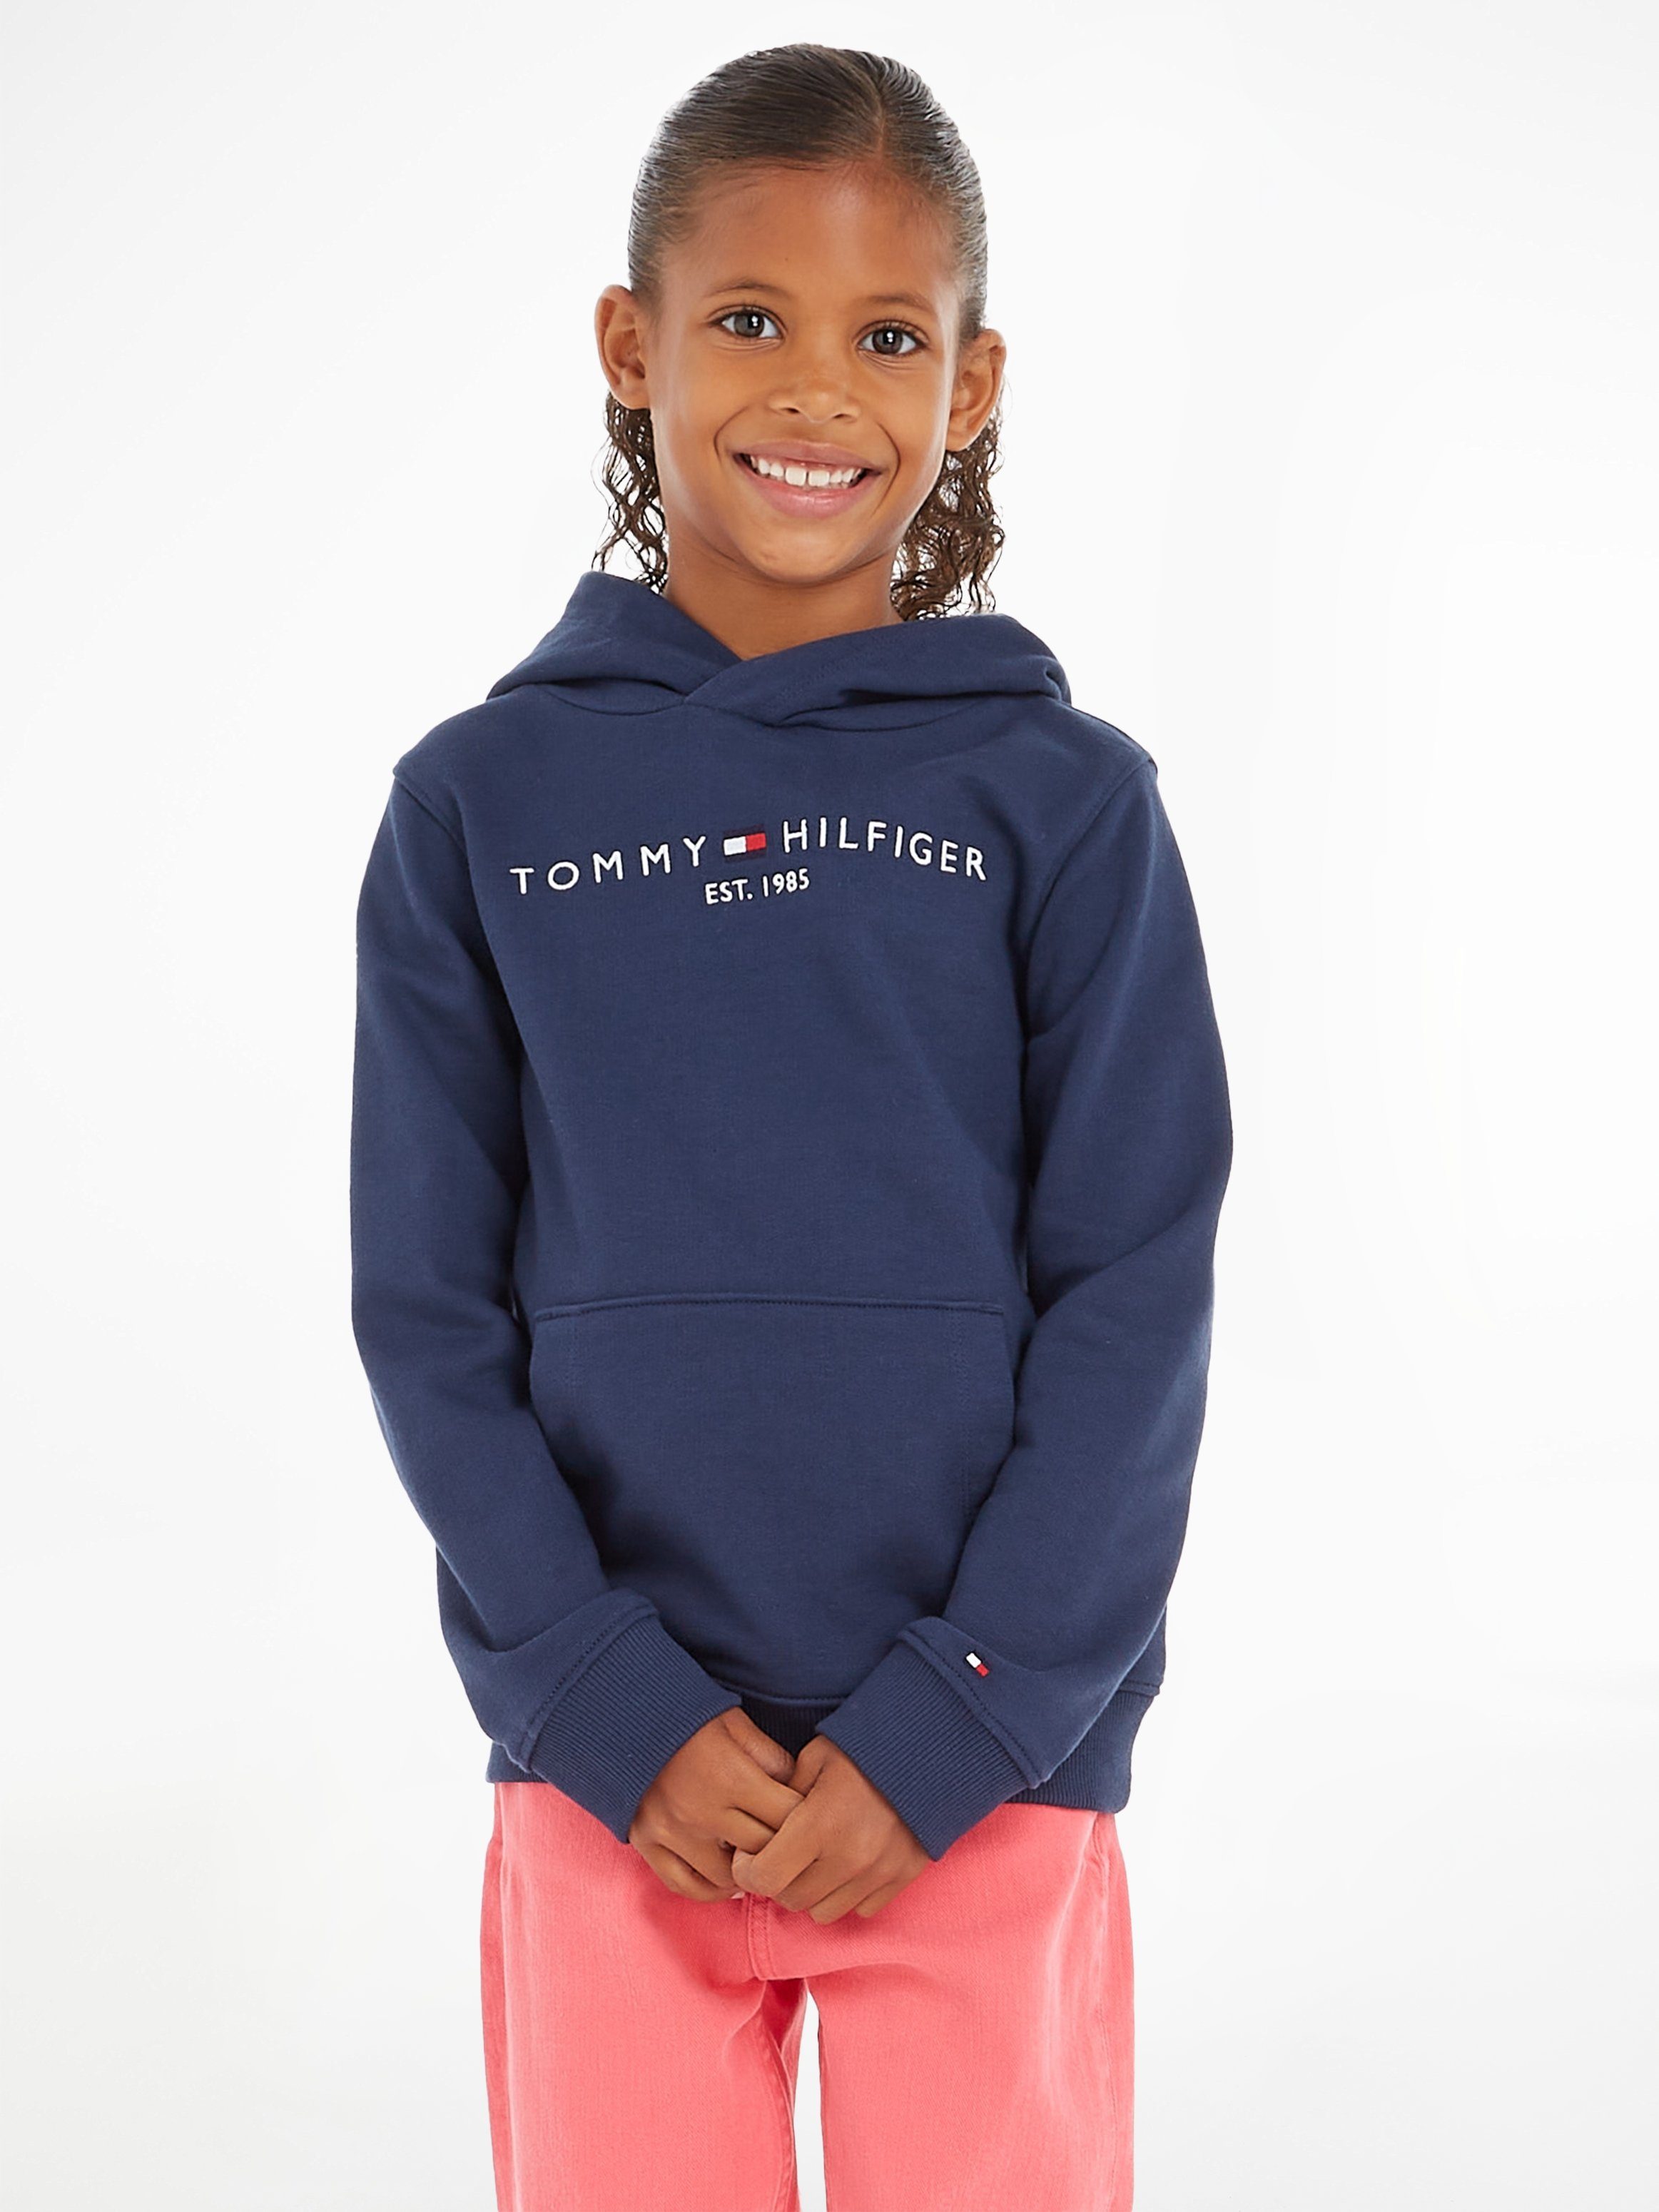 Mädchen Kinder und Hilfiger HOODIE Kapuzensweatshirt Junior Tommy Jungen ESSENTIAL MiniMe,für Kids